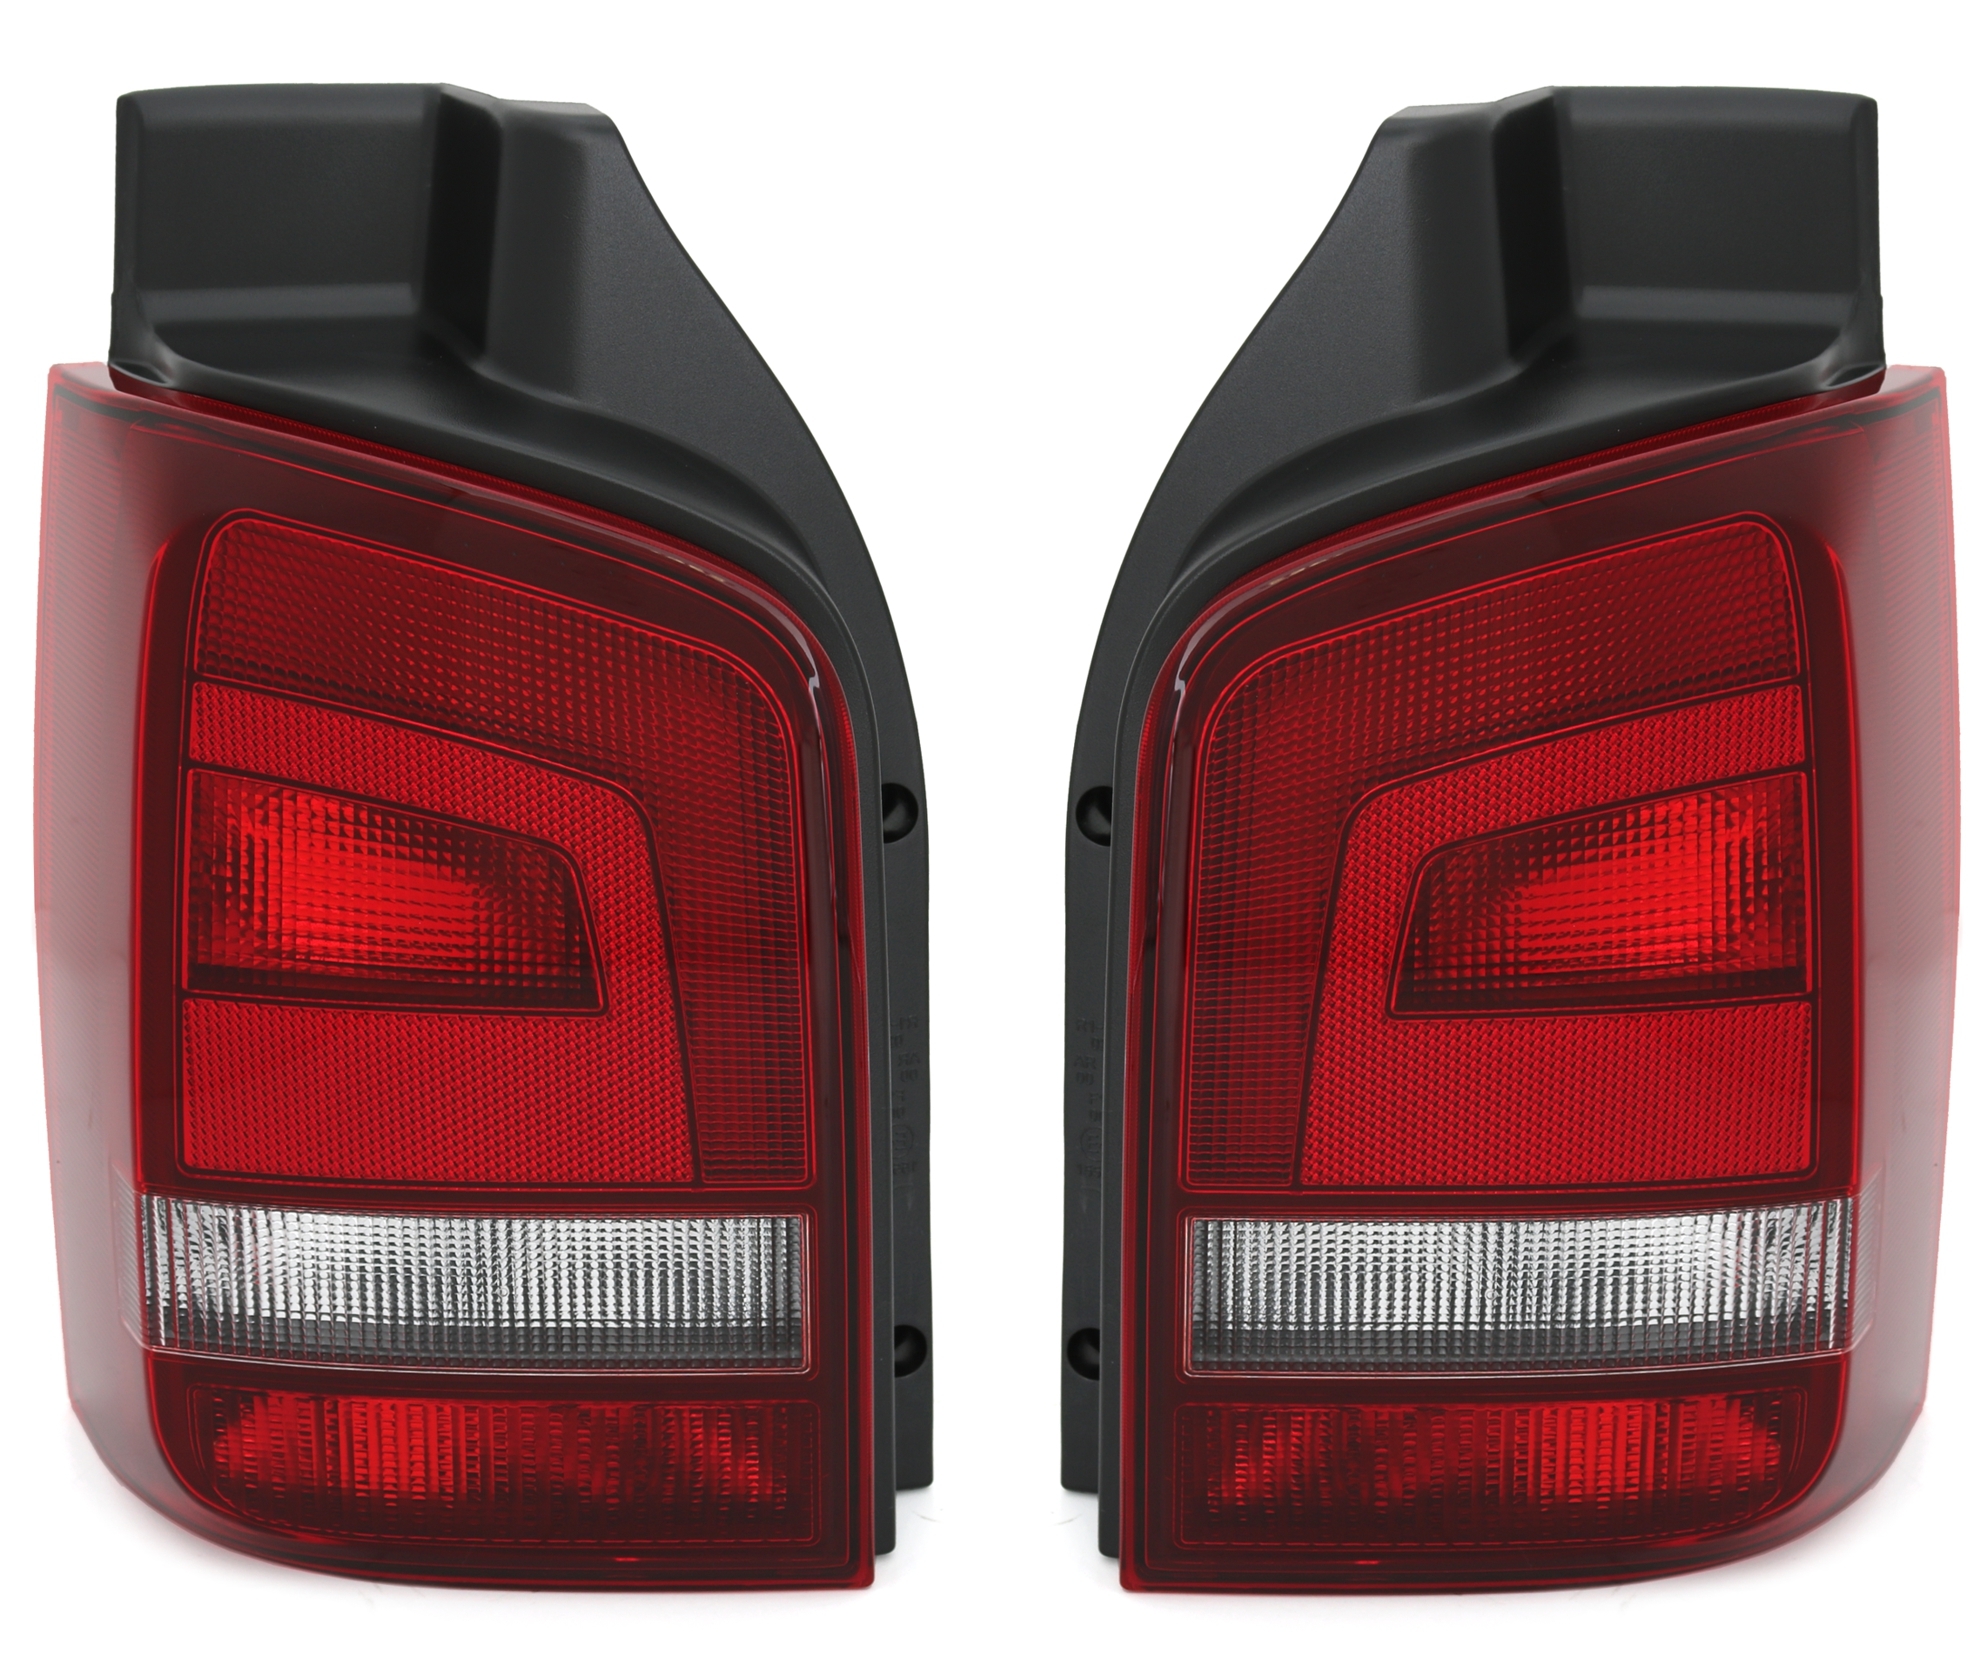 Rückleuchten für VW T5 Facelift in Rot-Smoke